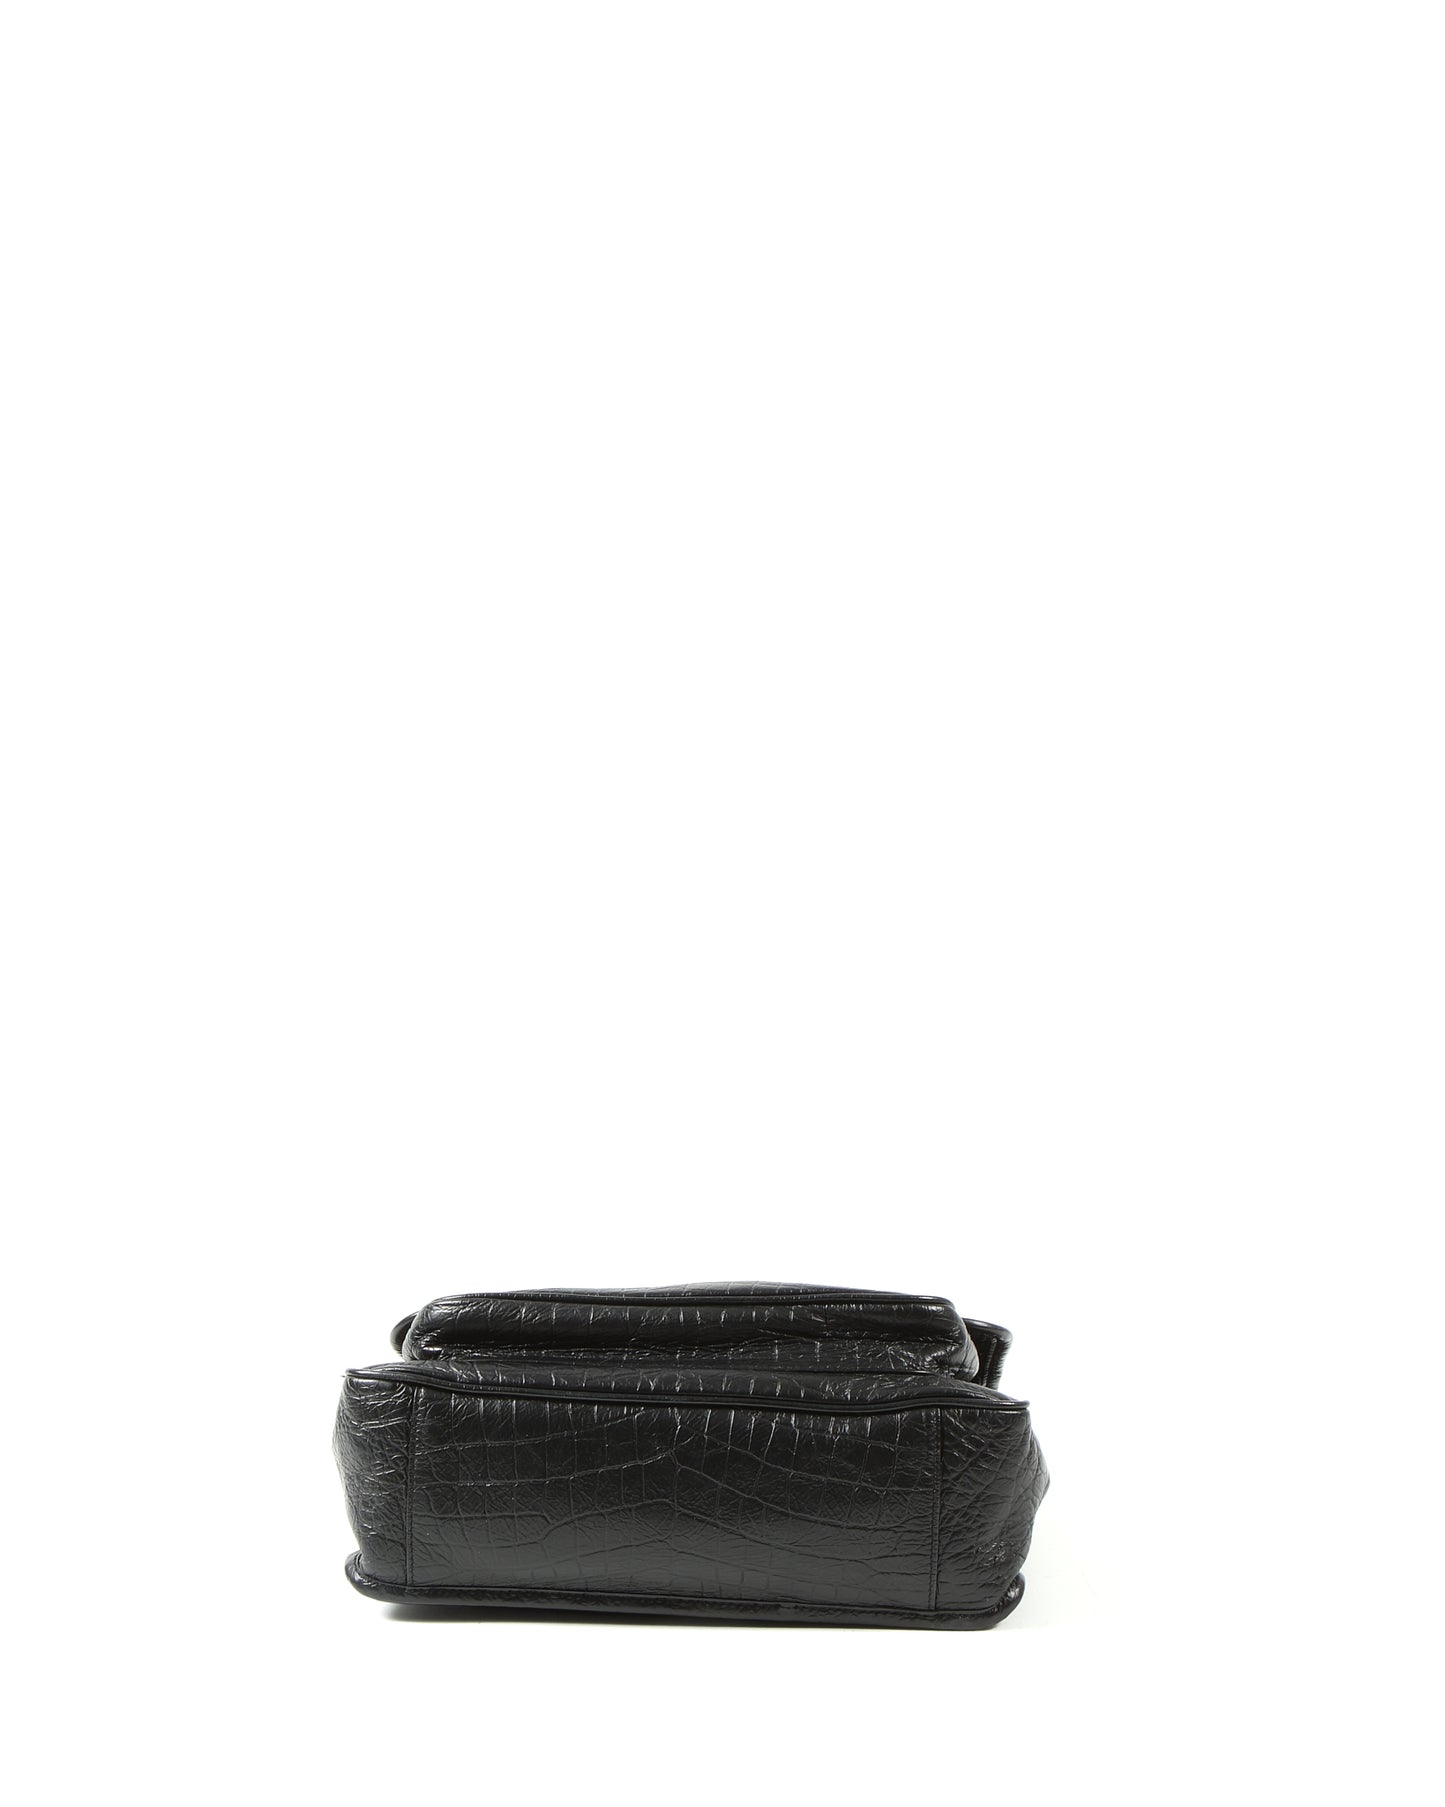 Saint Laurent All Black Croc Nubuck Embossed Leather Niki Medium Chain Bag